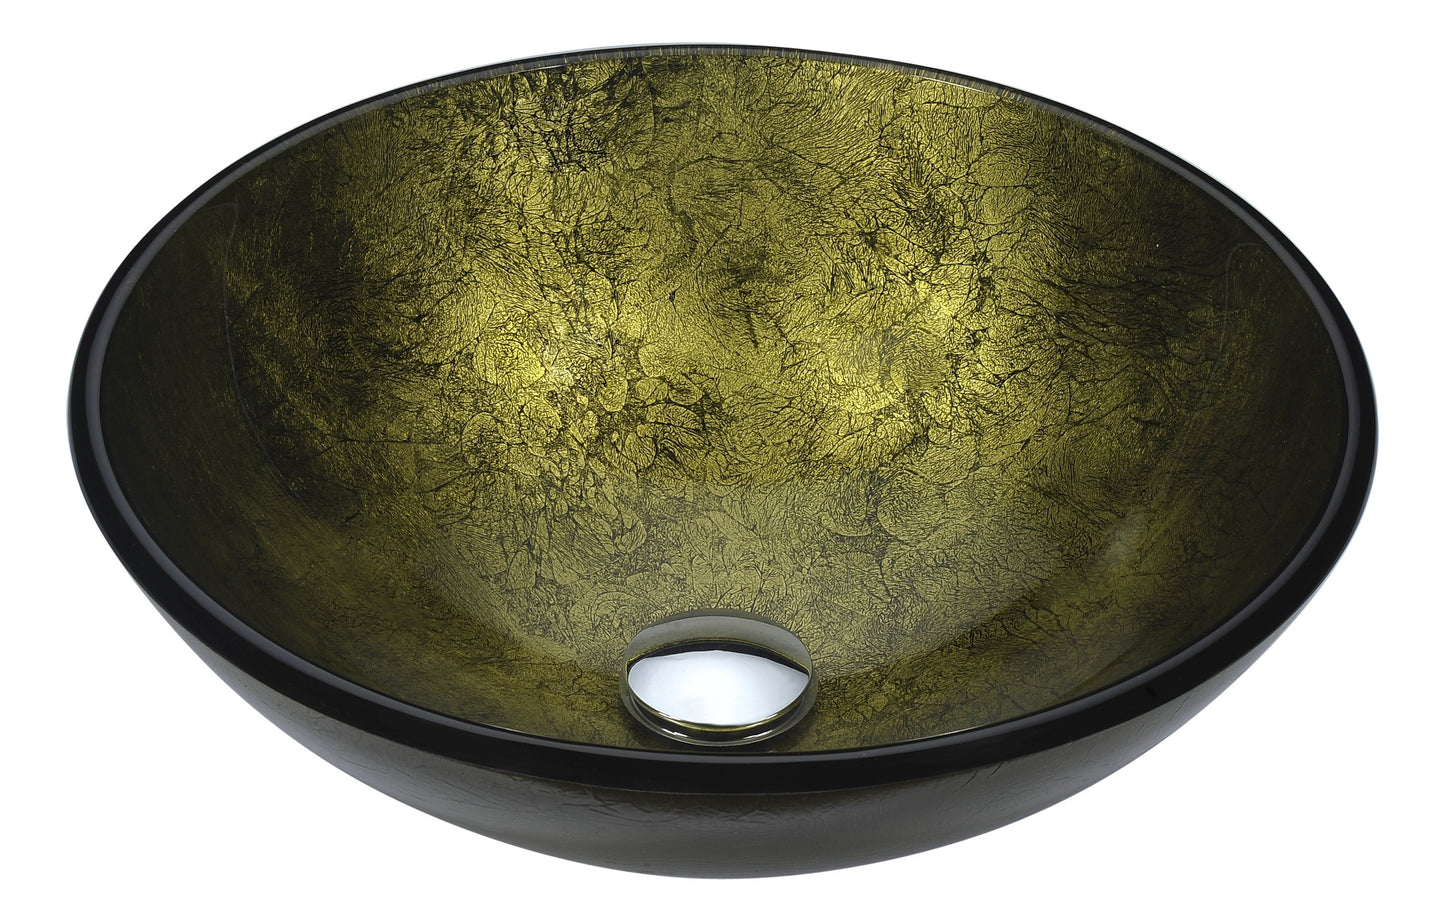 Posh Series Deco-Glass Vessel Sink in Verdure Gold - Luxe Bathroom Vanities